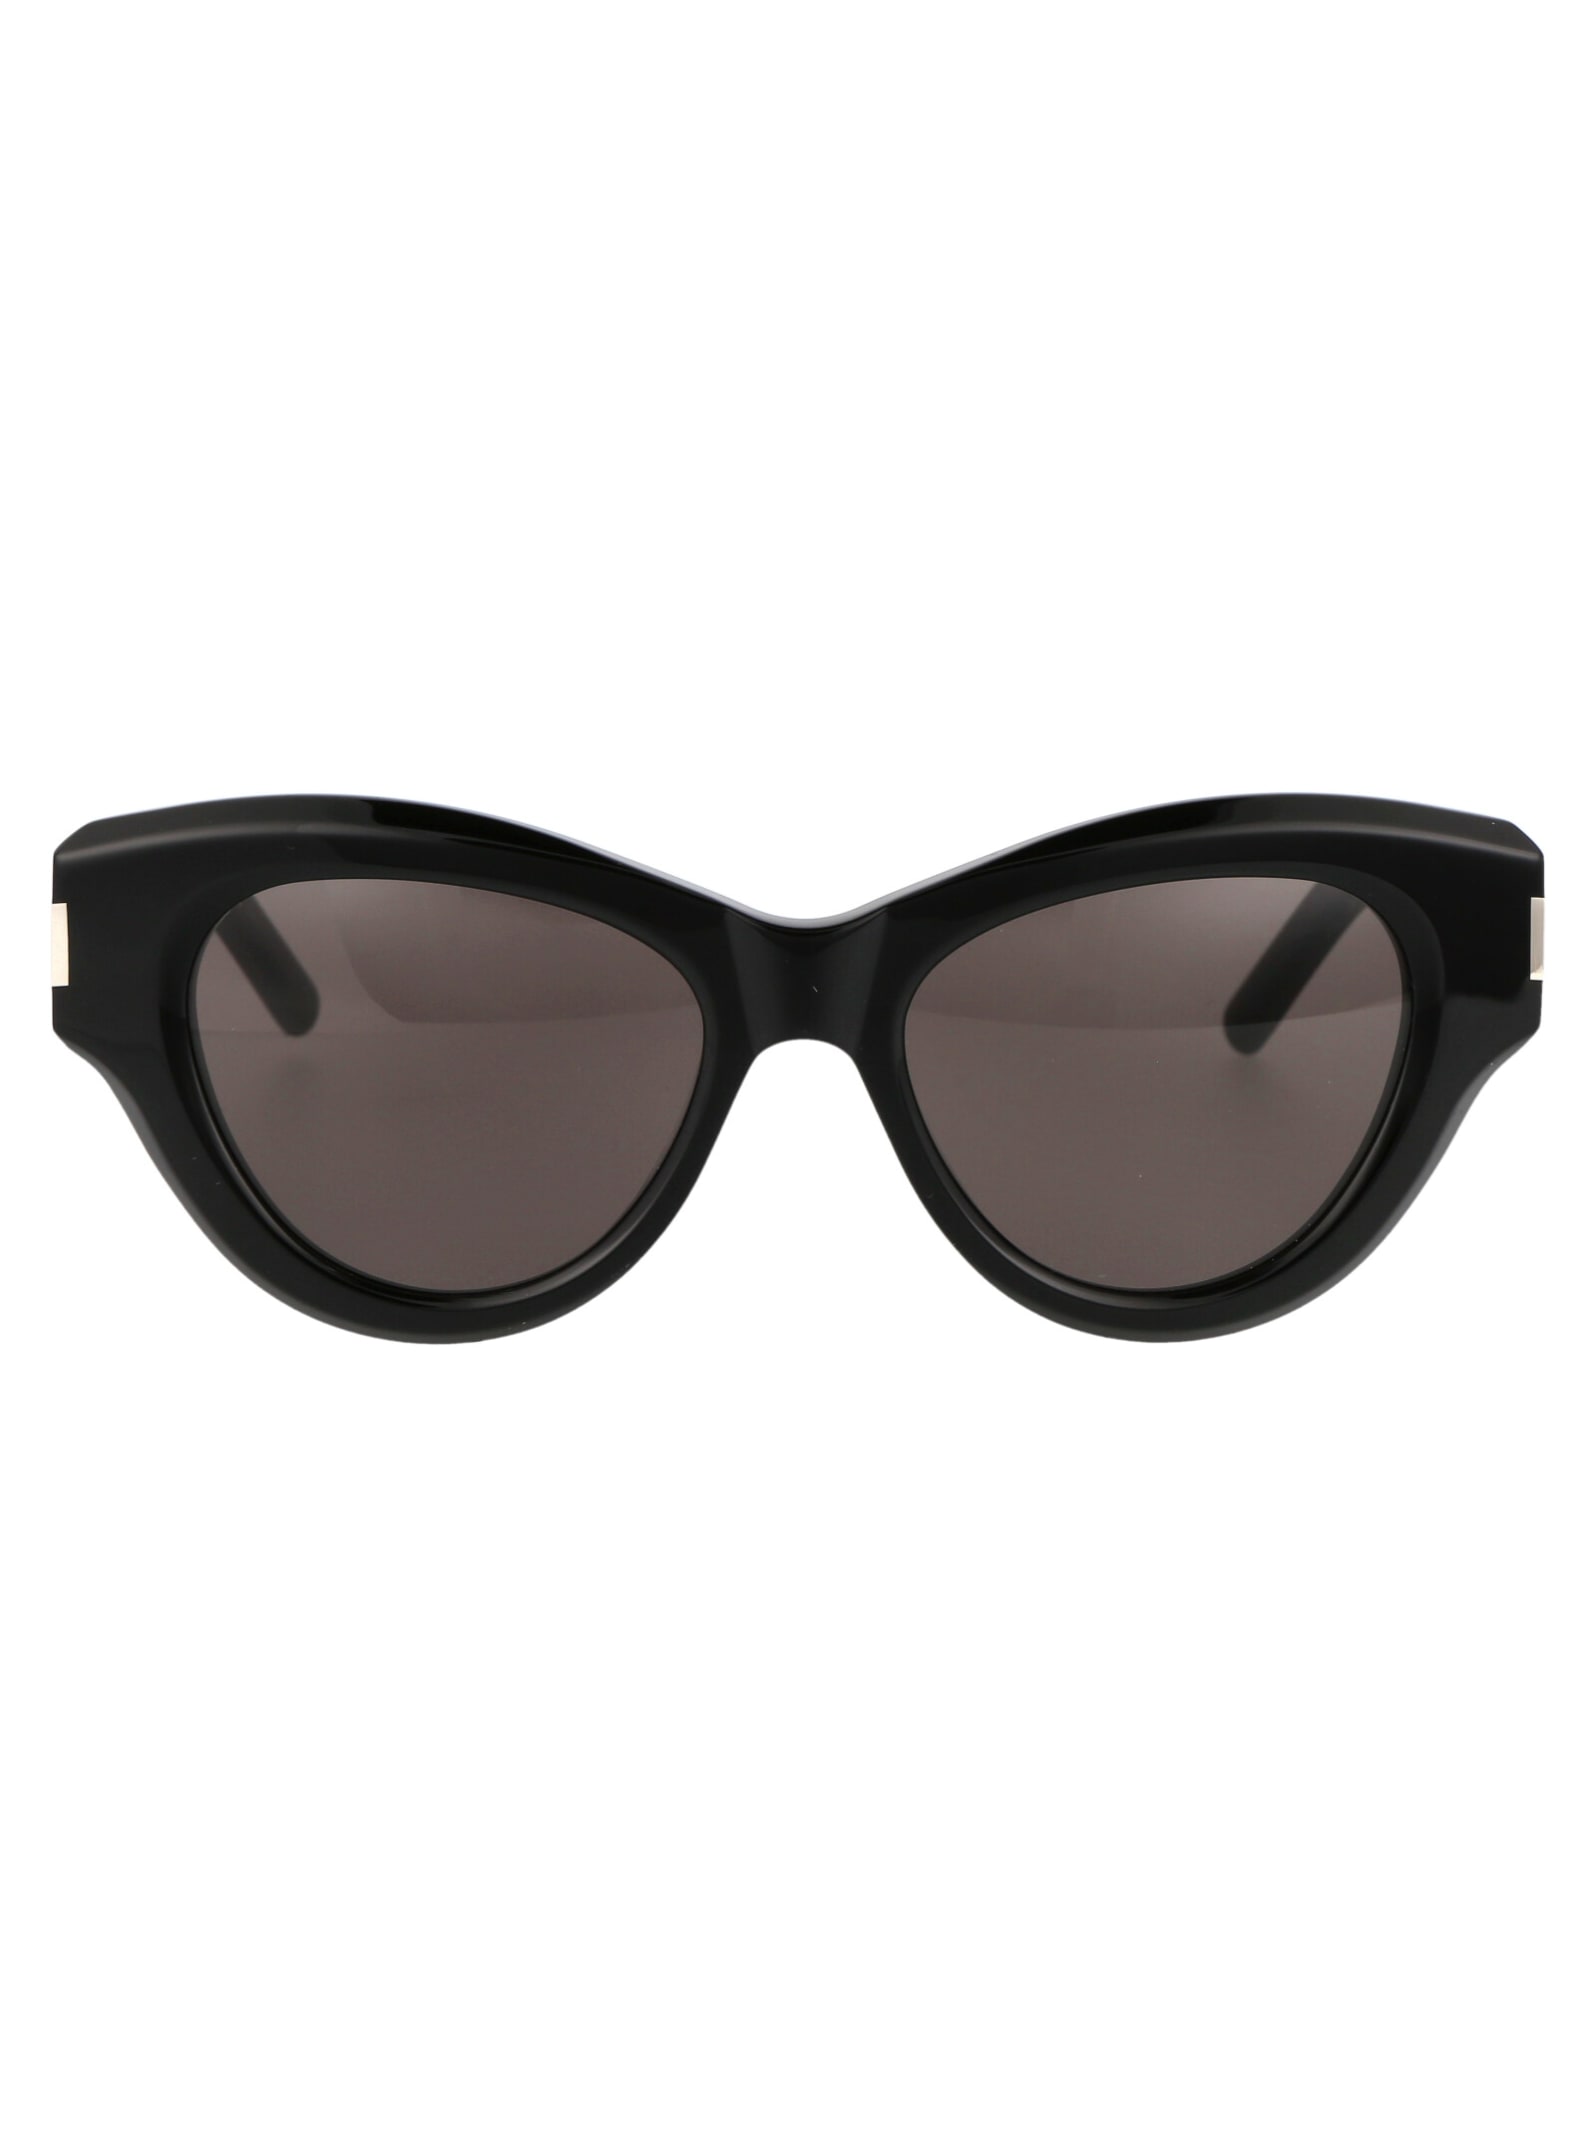 Saint Laurent Eyewear Sl 506 Sunglasses